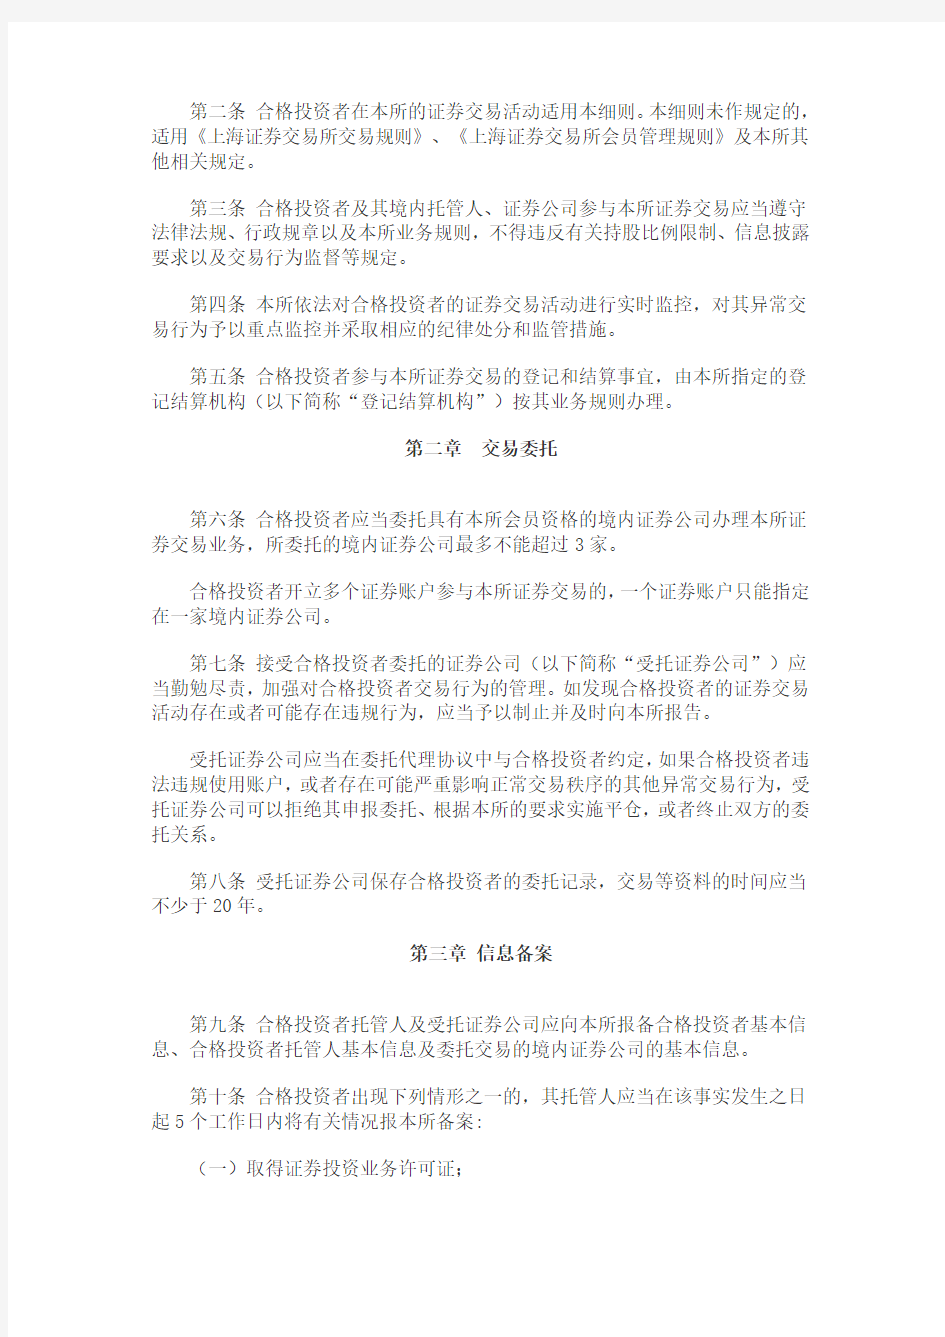 上海证券交易所合格境外机构投资者和人民币合格境外机构投资者证券交易实施细则2014-03-19